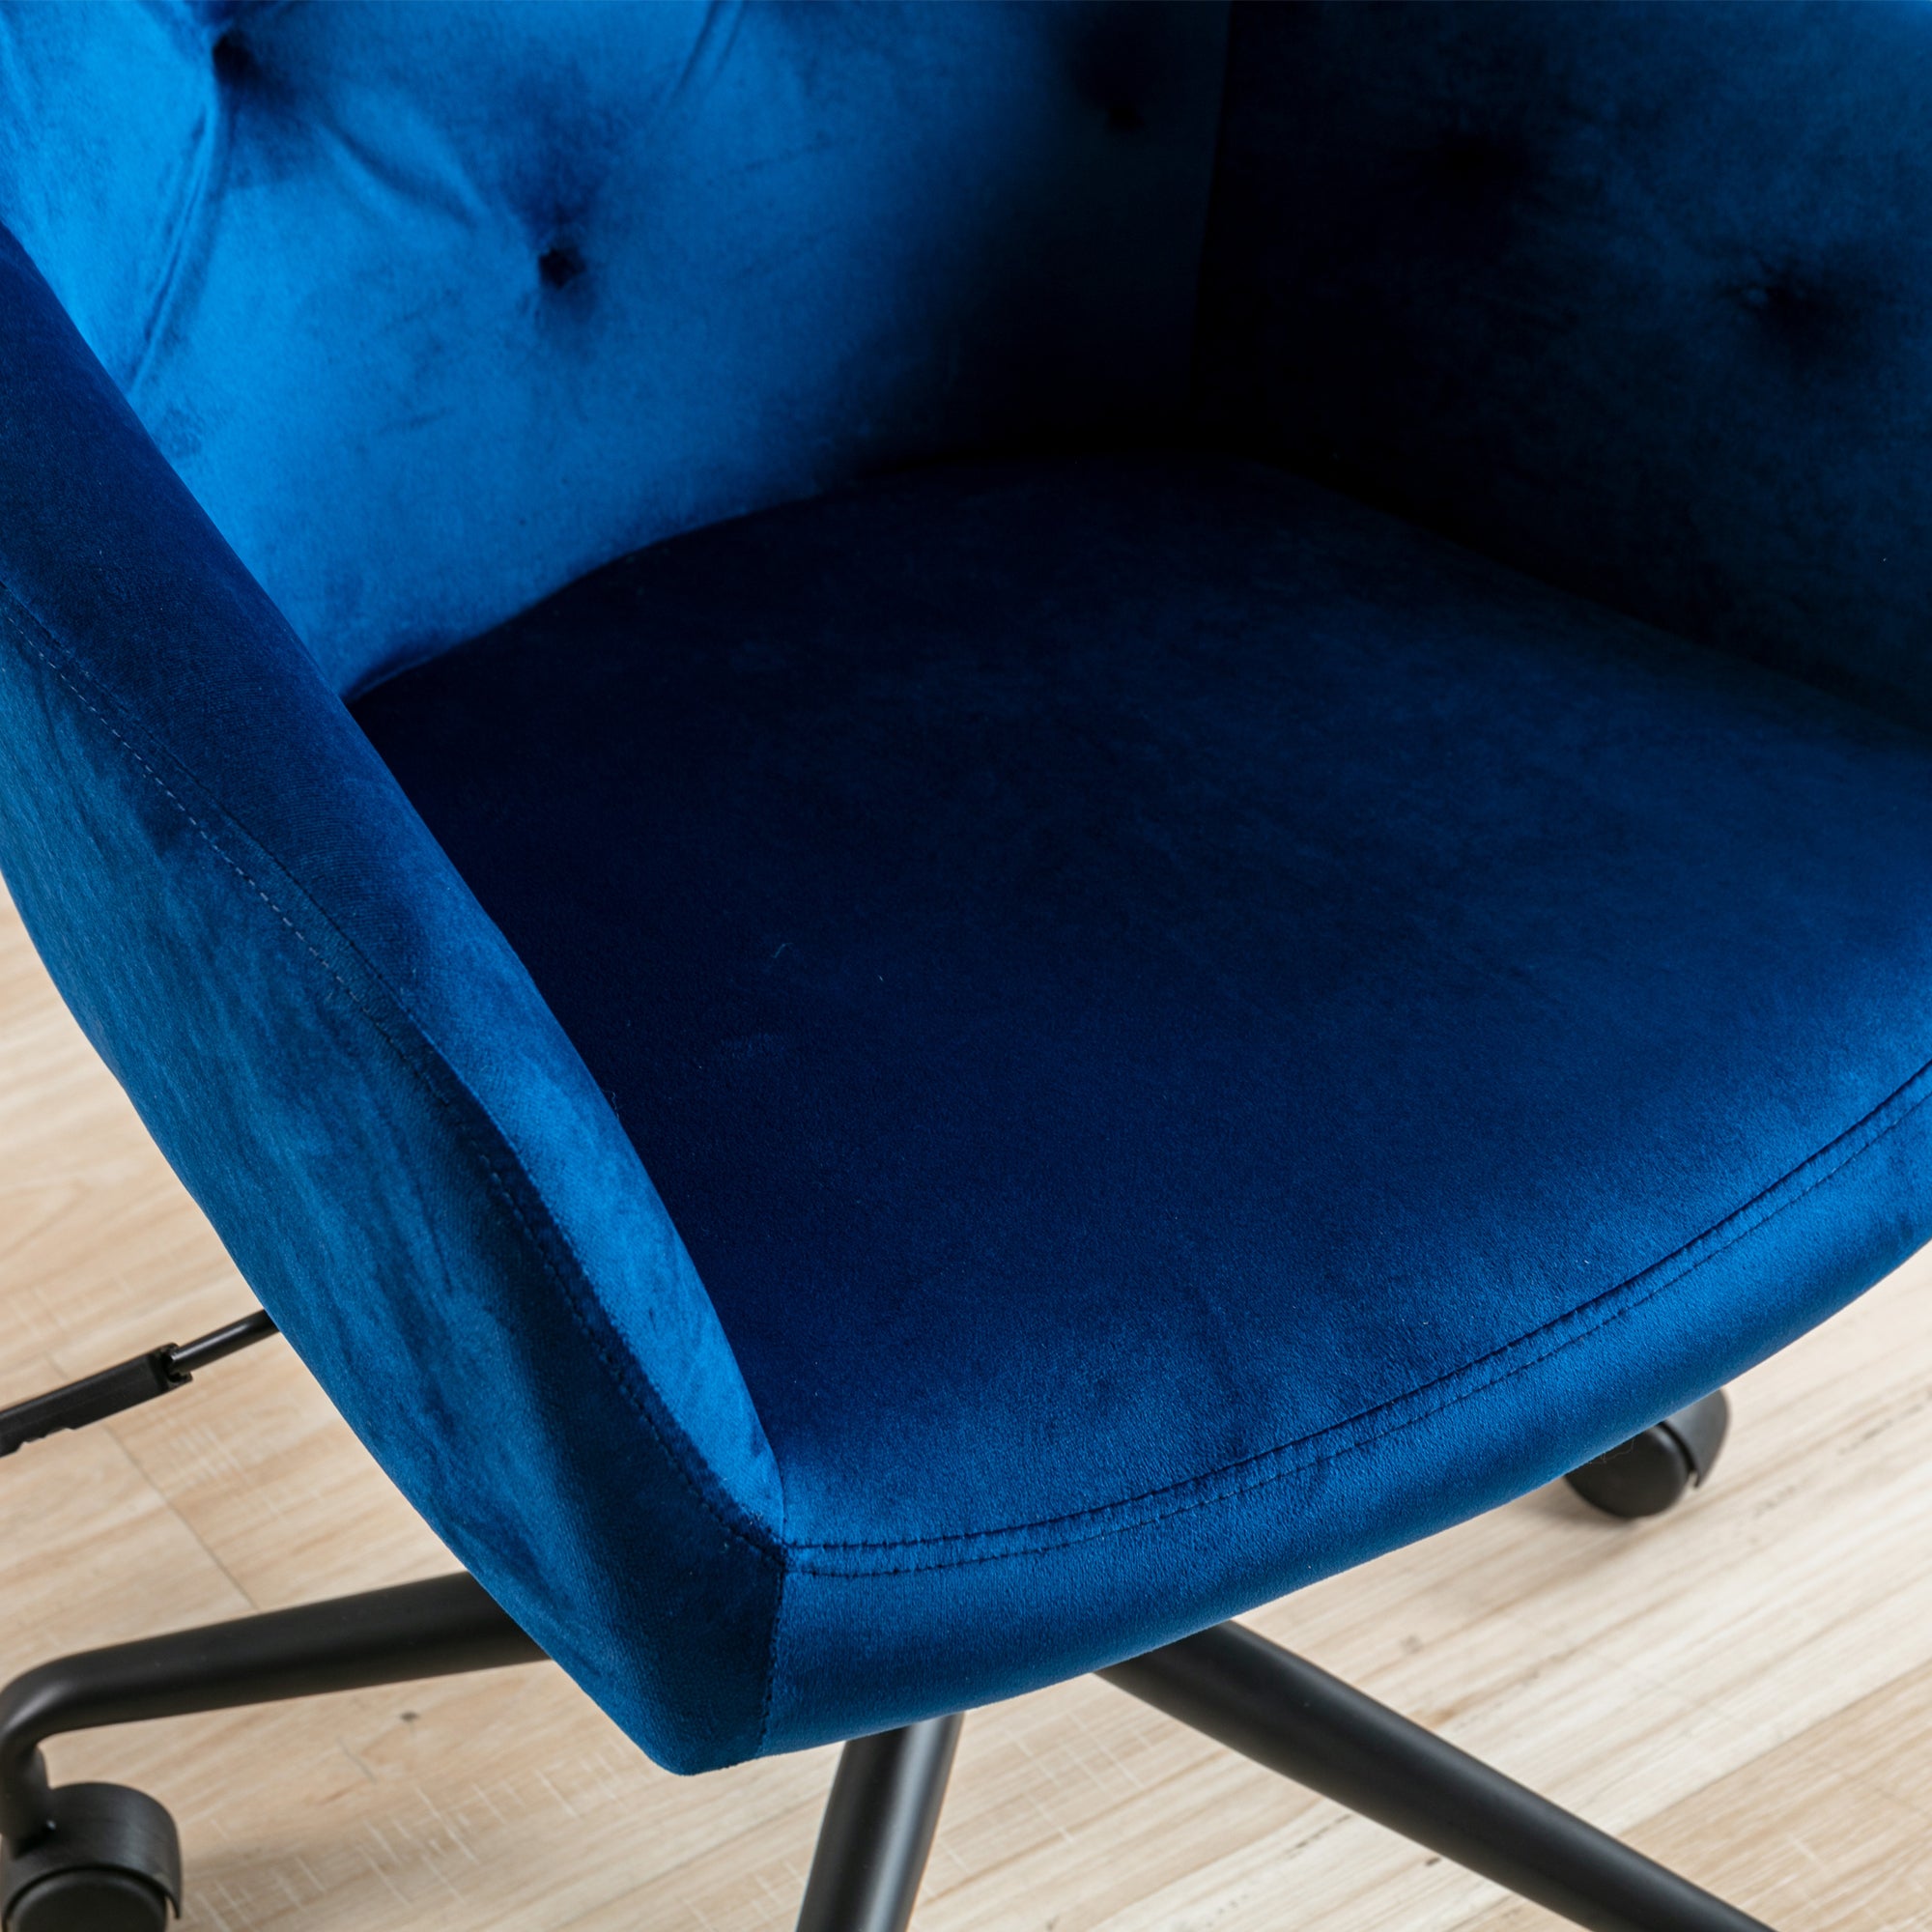 Velvet Fabric Home Office Chair